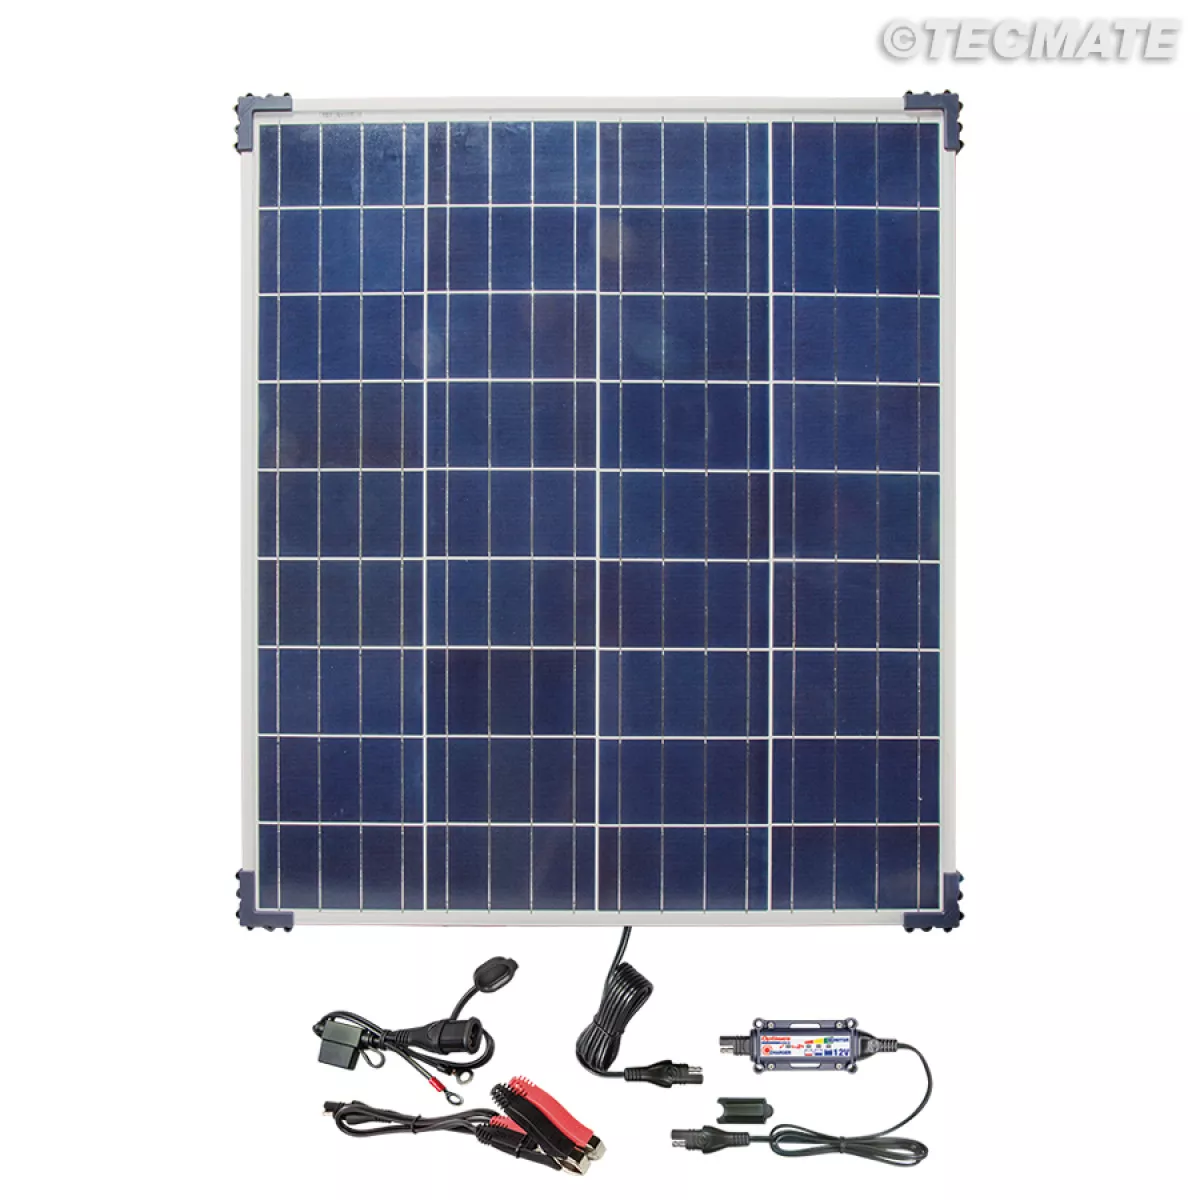 Optimate Solar Panel 80W 12V Batterie Ladegerät Lader